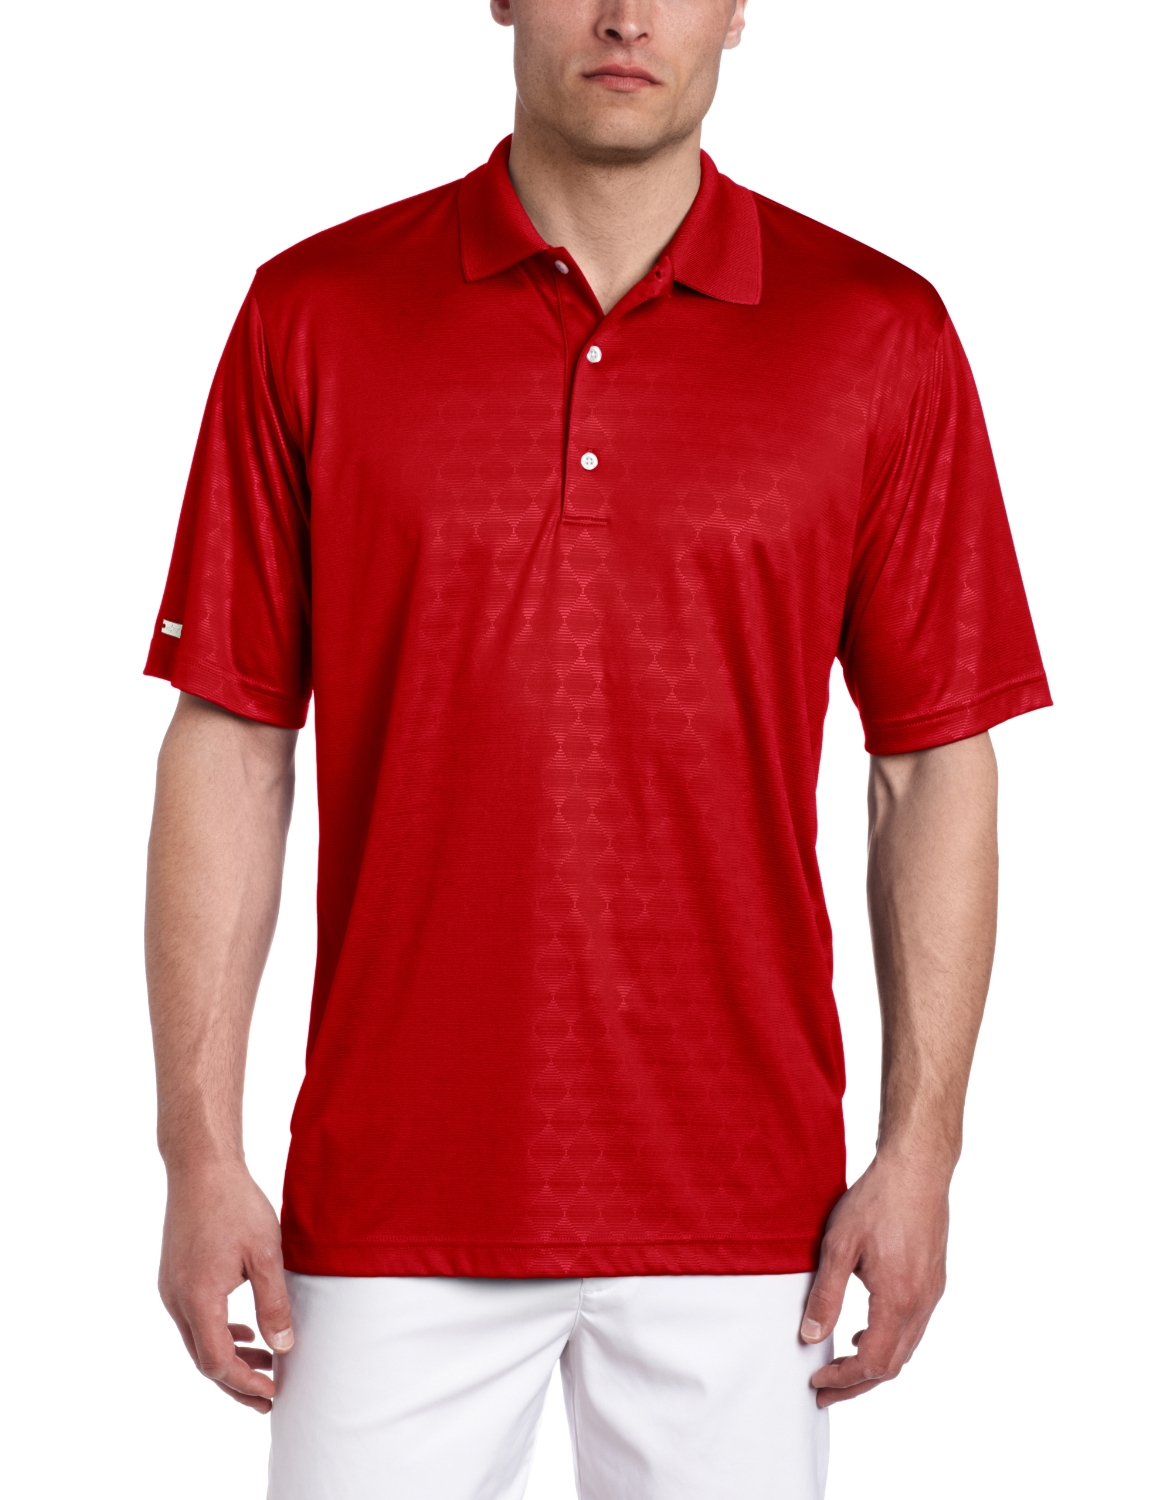 Greg Norman Royal Embossed Golf Polo Shirts